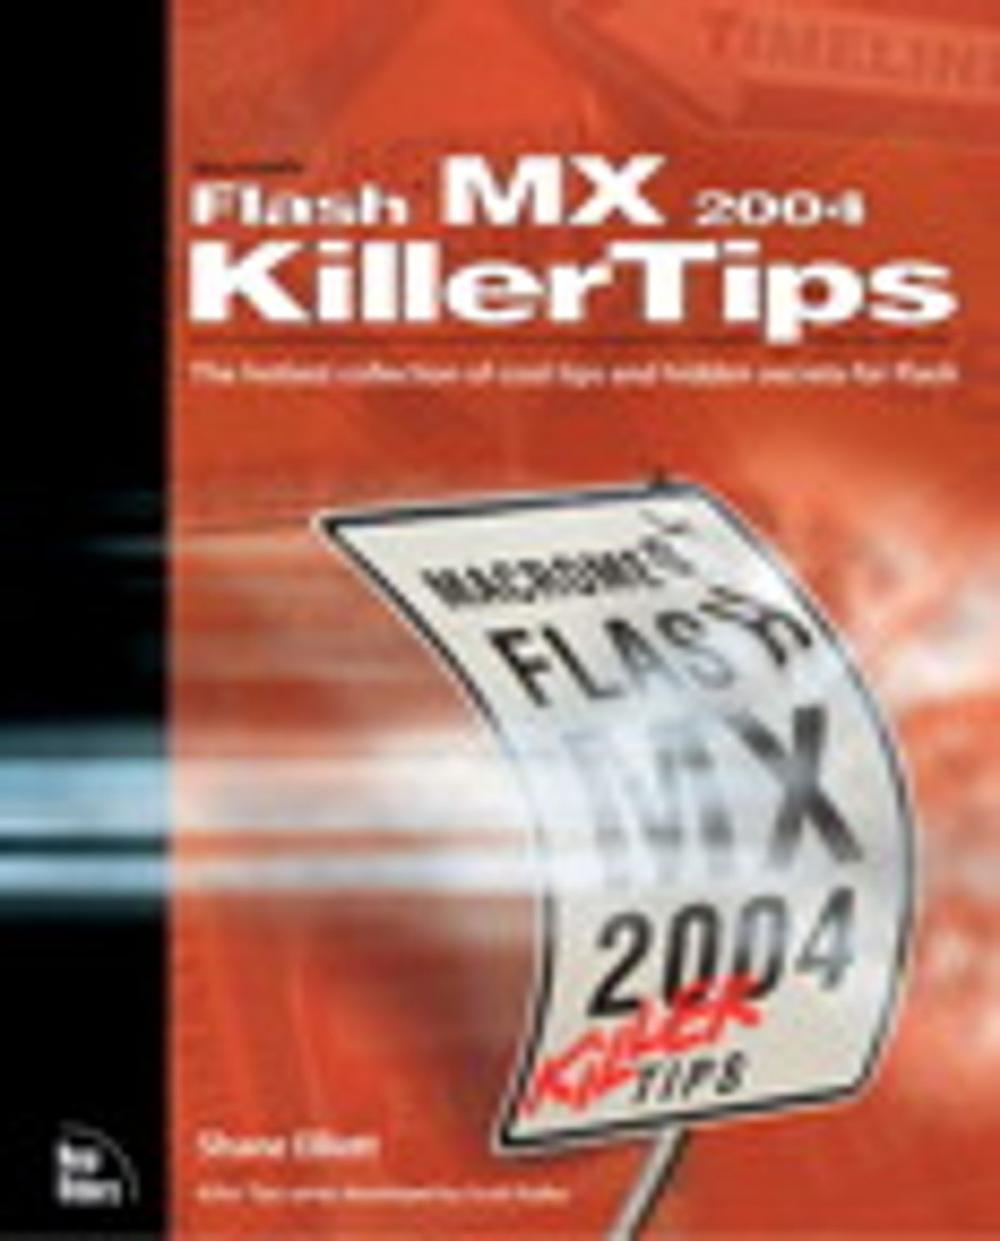 Big bigCover of Macromedia Flash MX 2004 Killer Tips